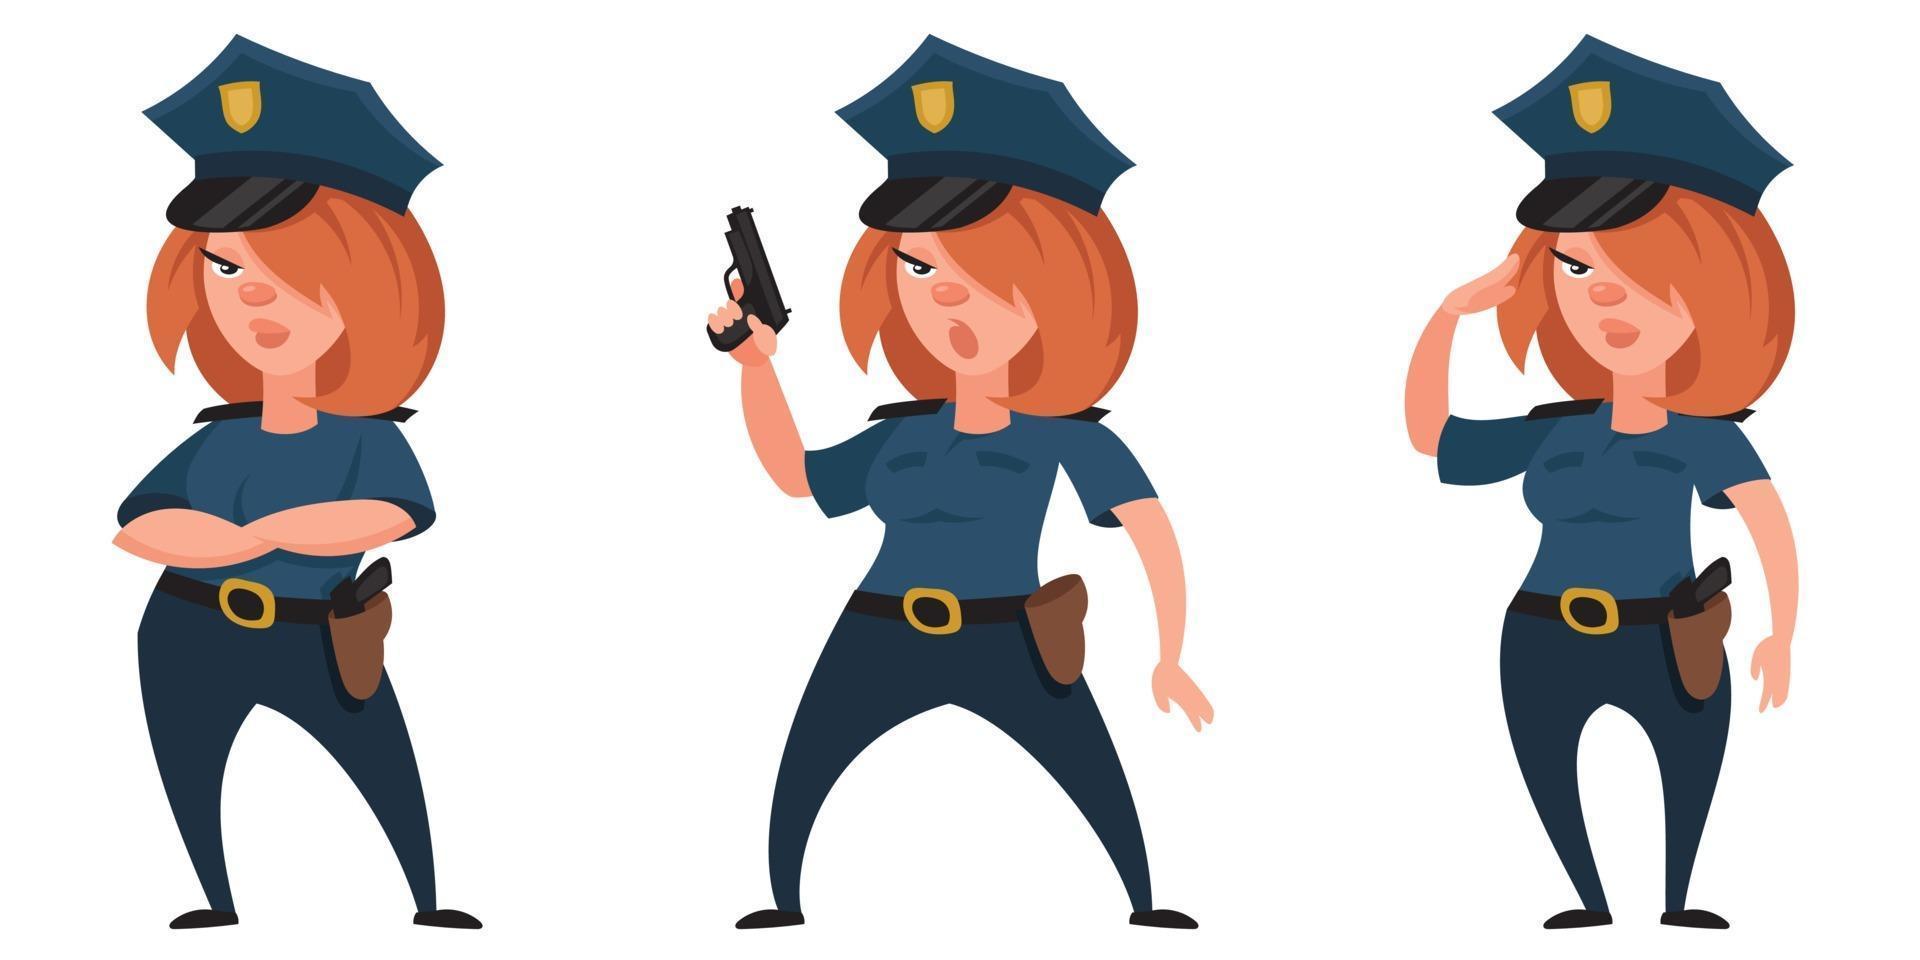 kvinnlig polis i olika poser. vektor